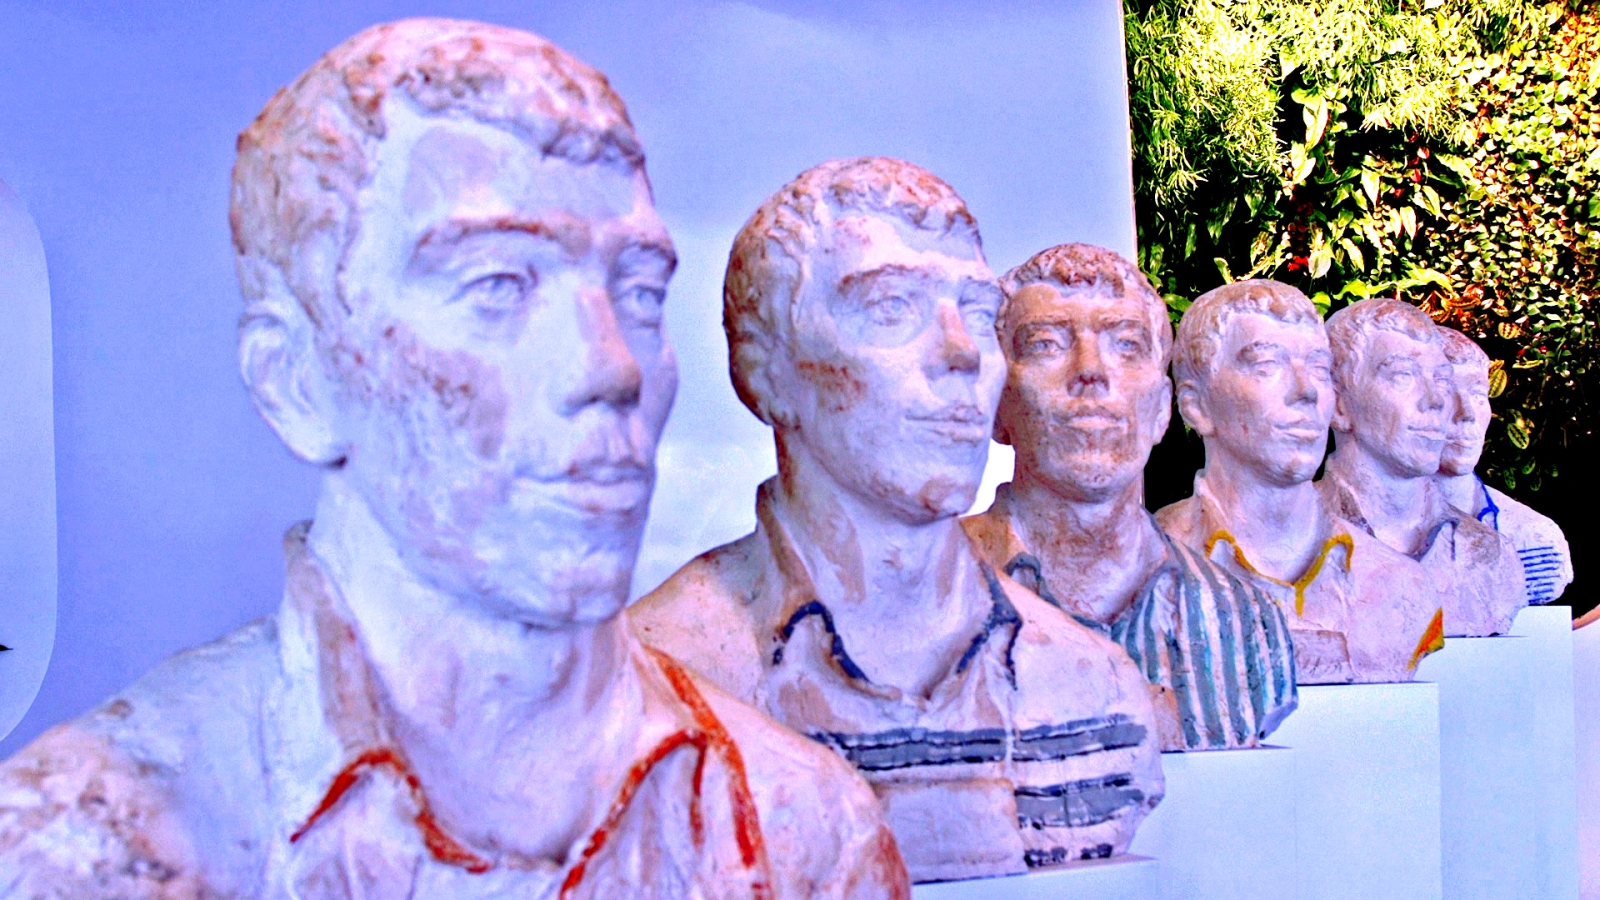 Busts of Yandex co-founder Ilya Segalovich